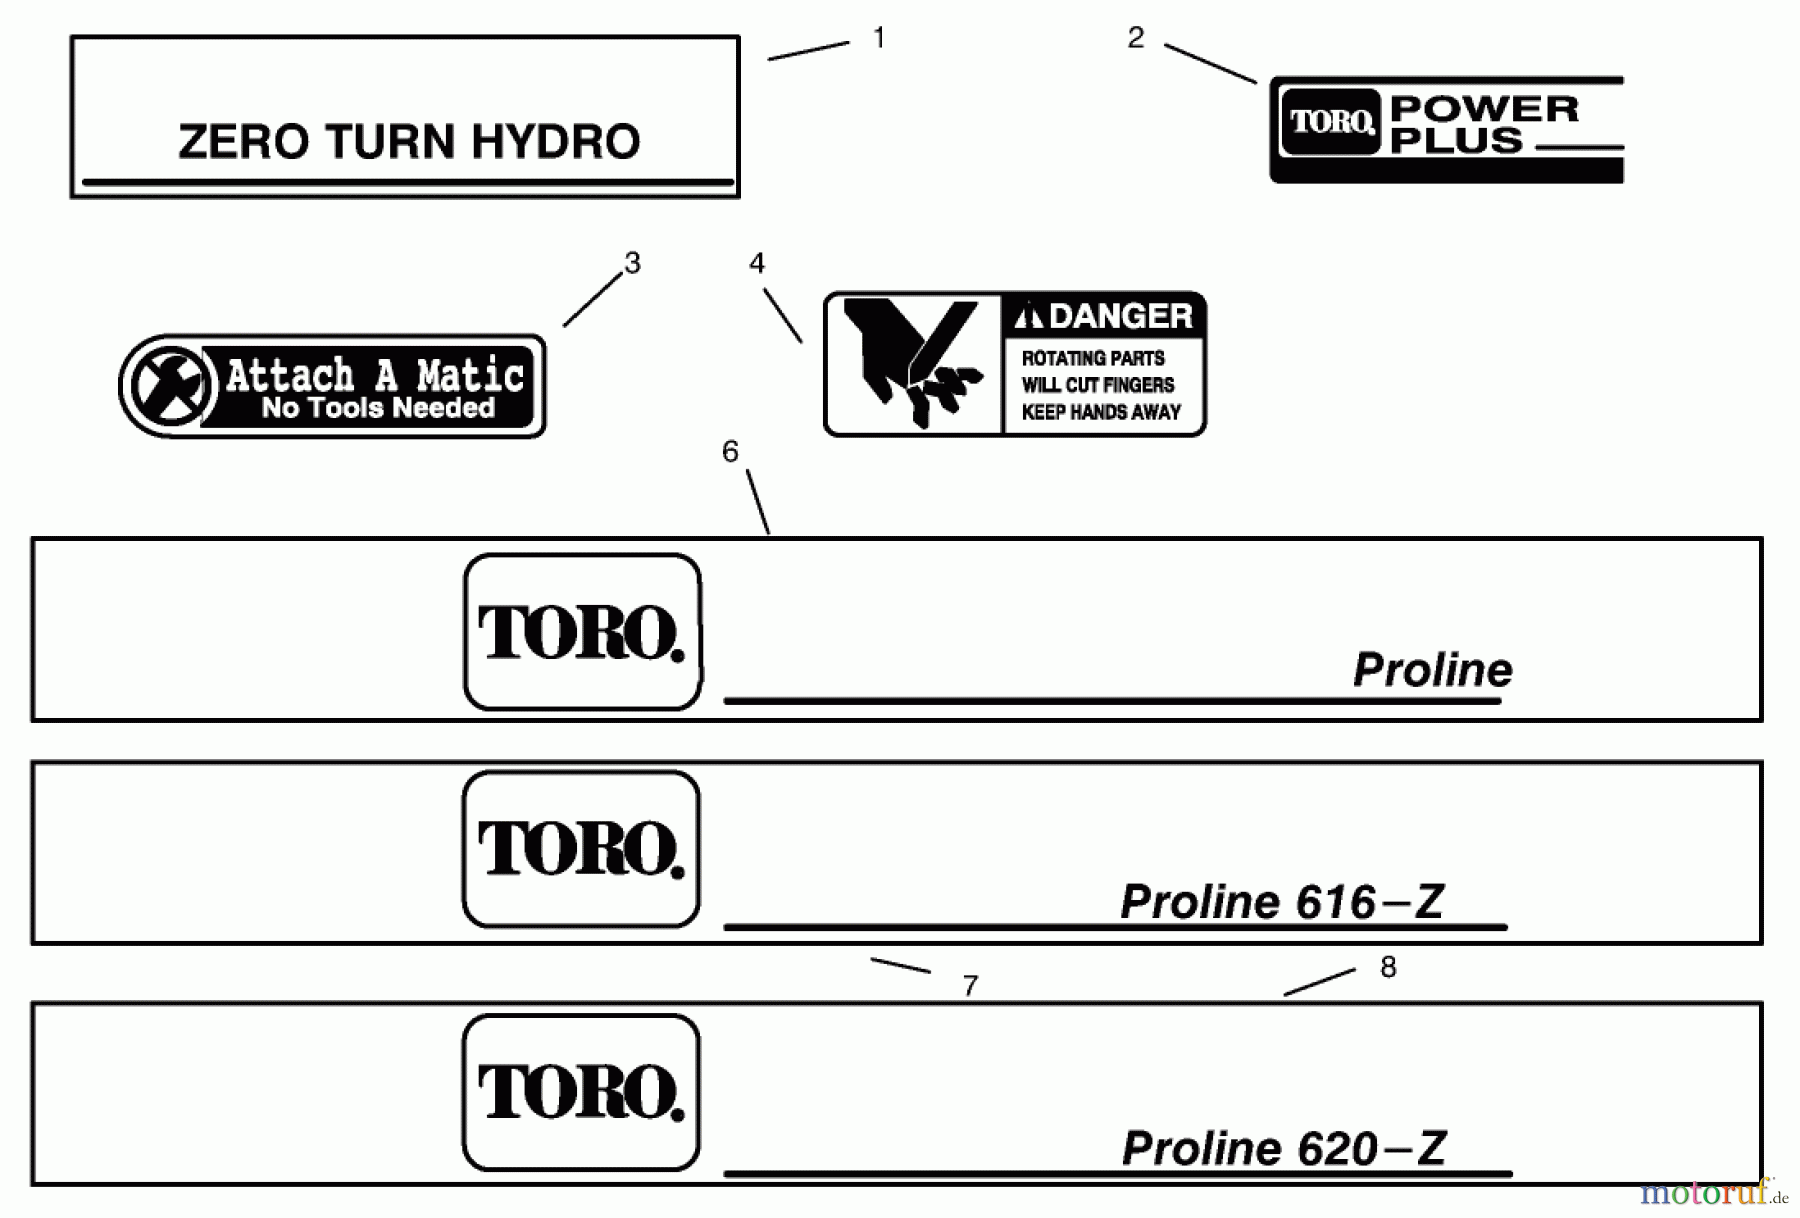  Toro Neu Mowers, Zero-Turn 74041 (616-Z) - Toro 616-Z Tractor, 1994 (49000001-49999999) DECALS #2